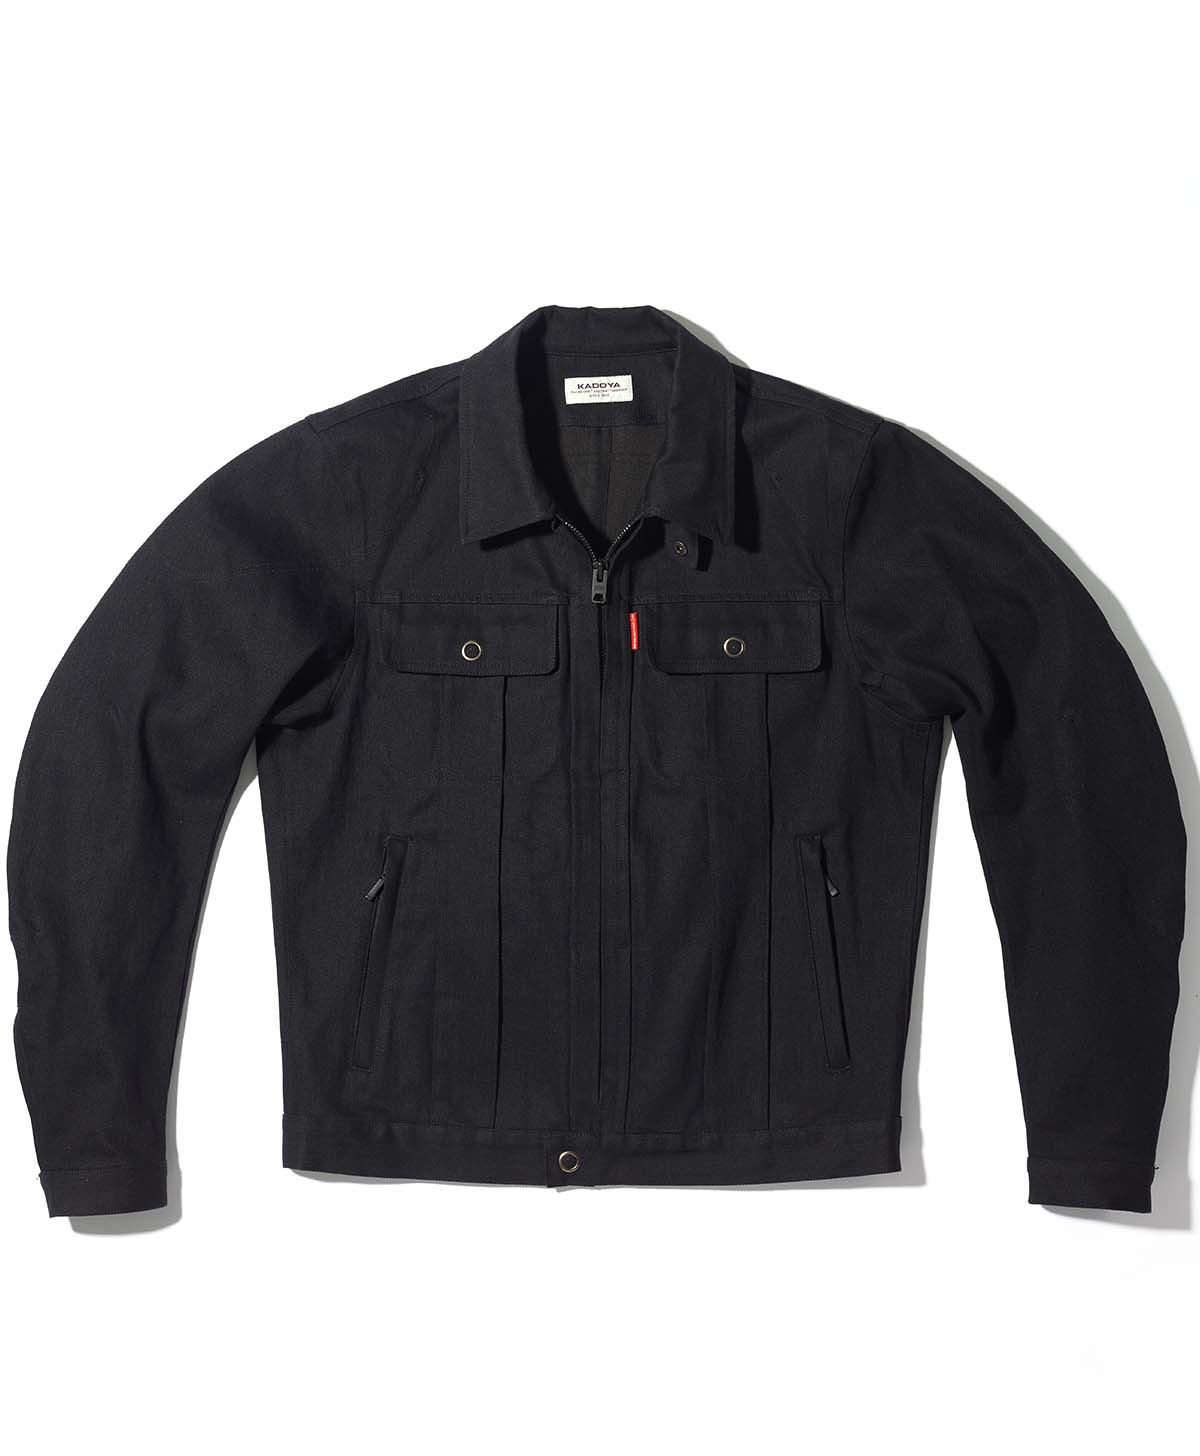 Denim Jacket Bike Wear | Kadoya Official Online Shop | CORSA ...